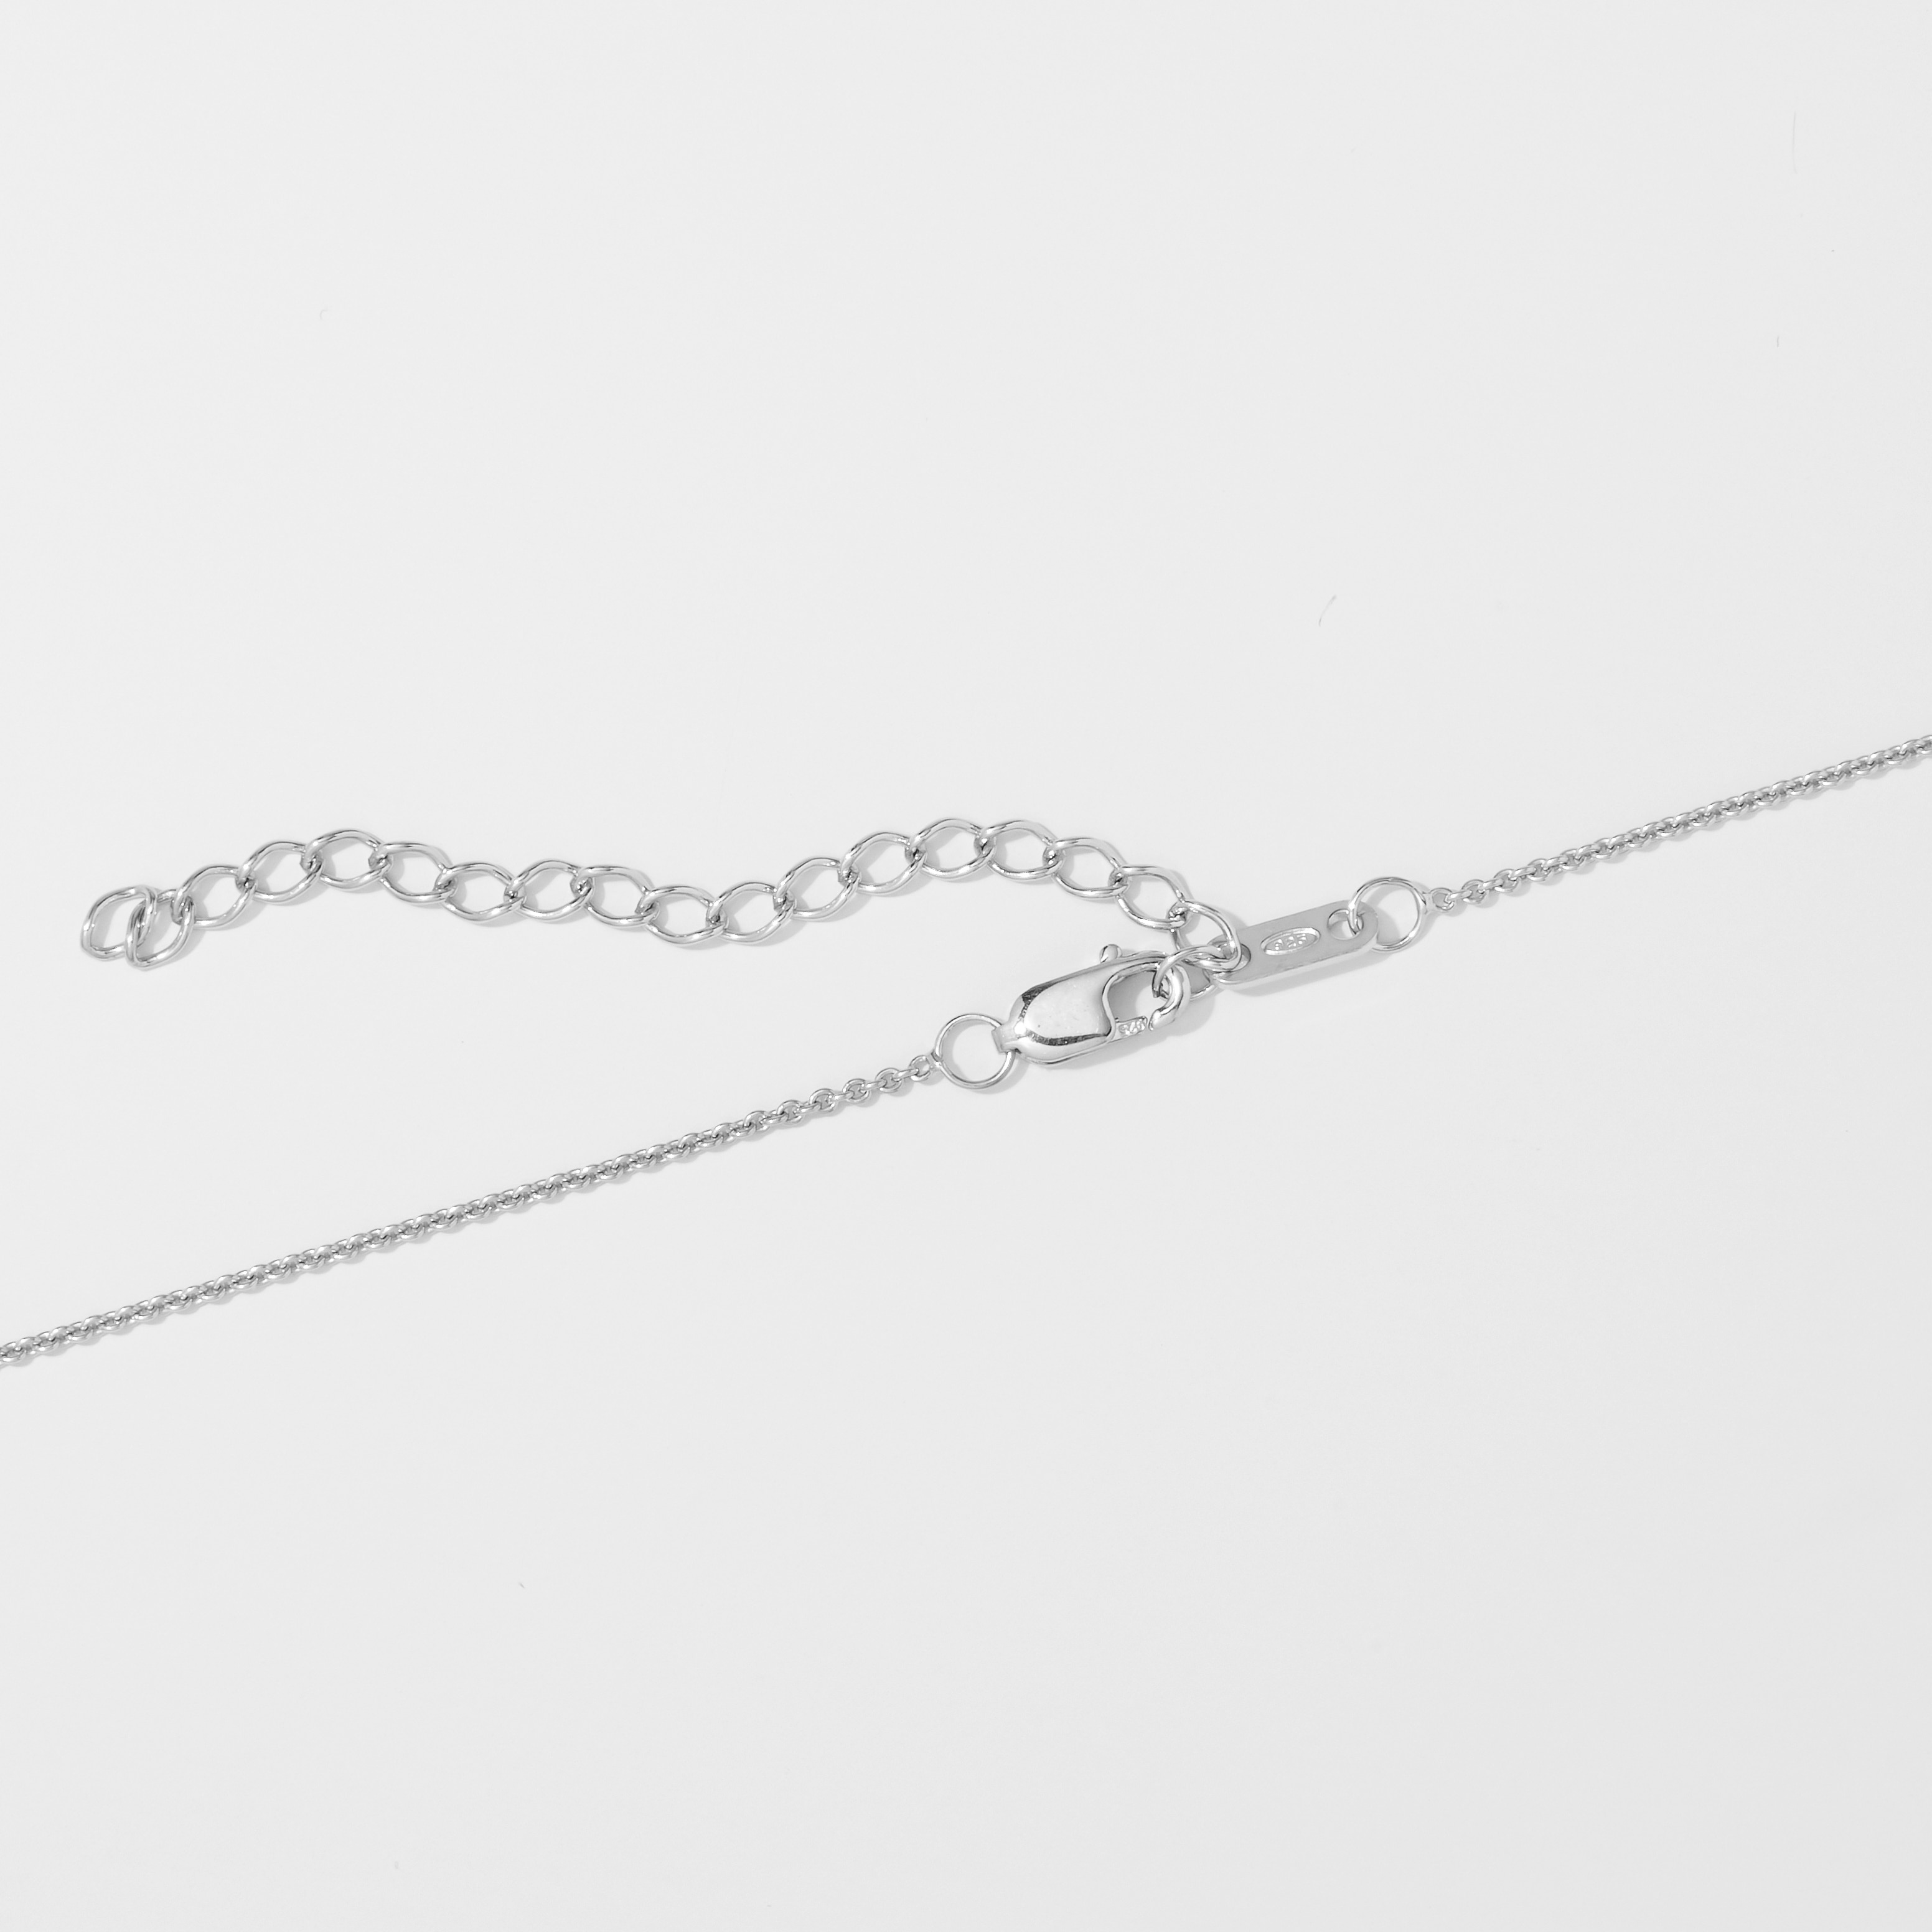 Jewellery - Necklaces & Pendants - Pendant Necklaces - Colours of